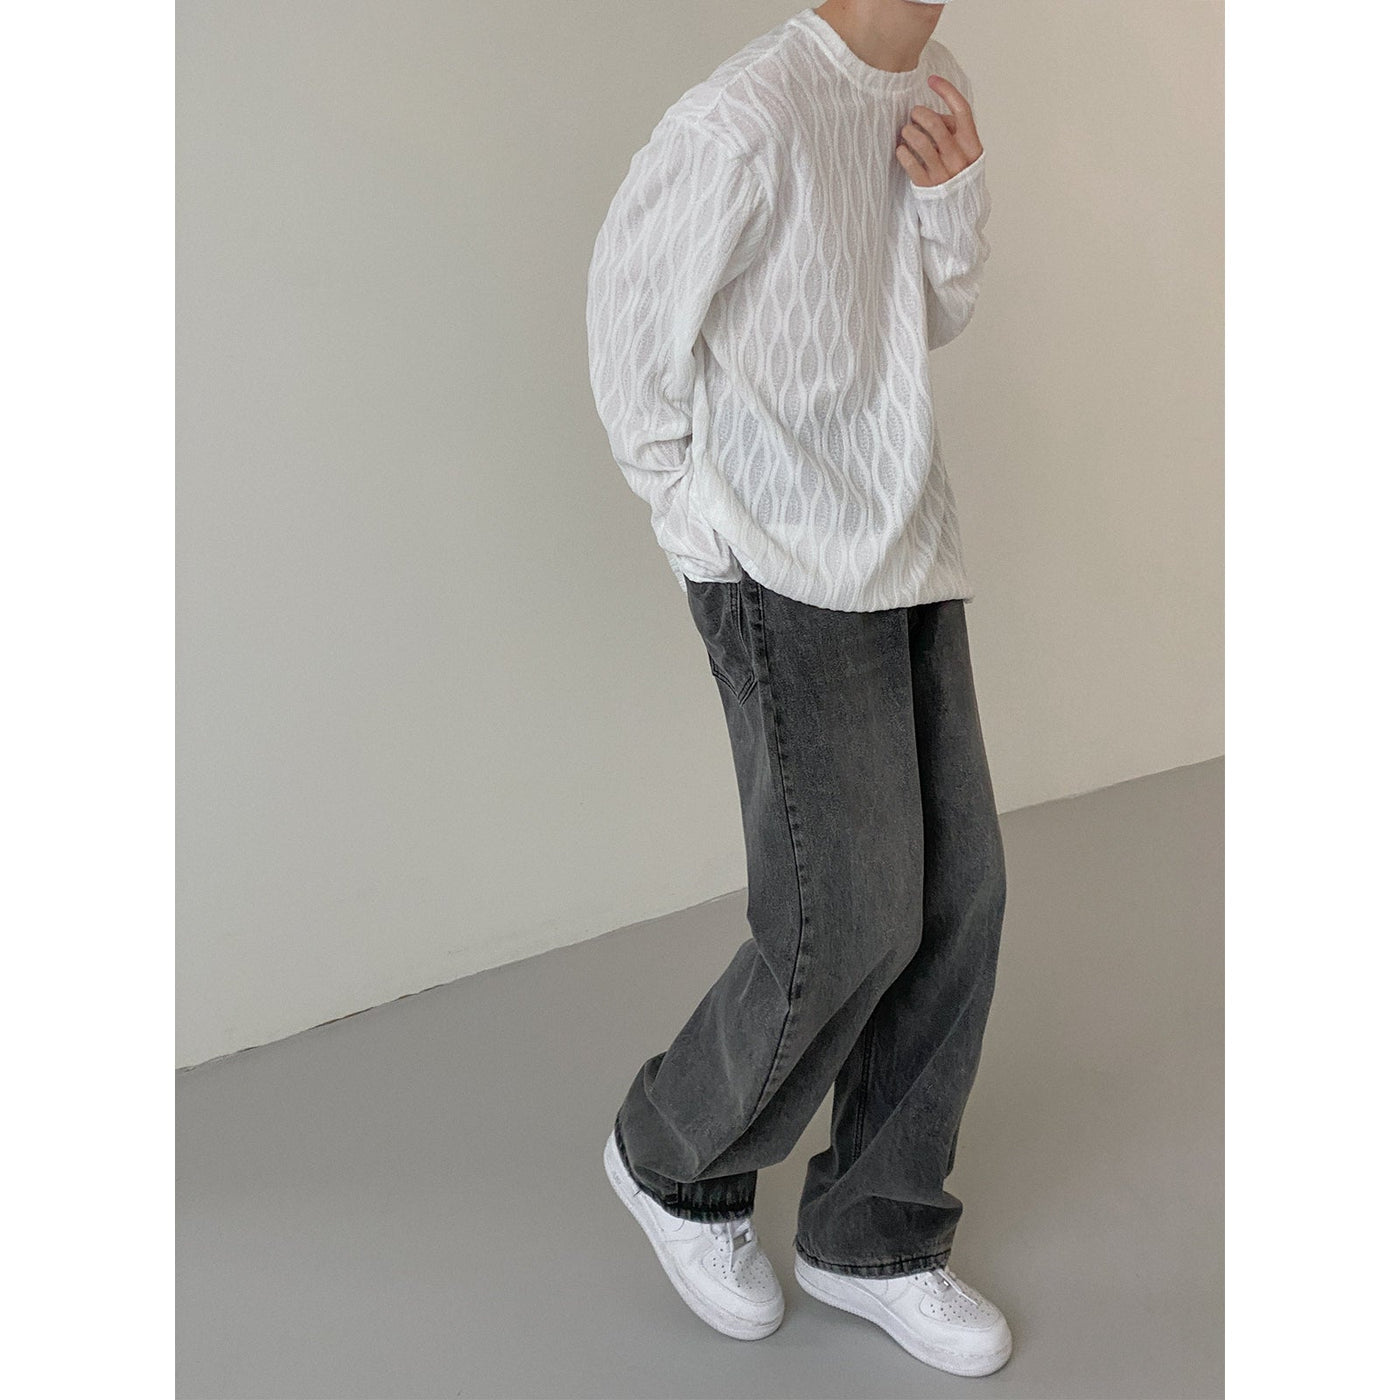 Zhou Honeycomb Detail Sheer Long Sleeve T-Shirt-korean-fashion-T-Shirt-Zhou's Closet-OH Garments